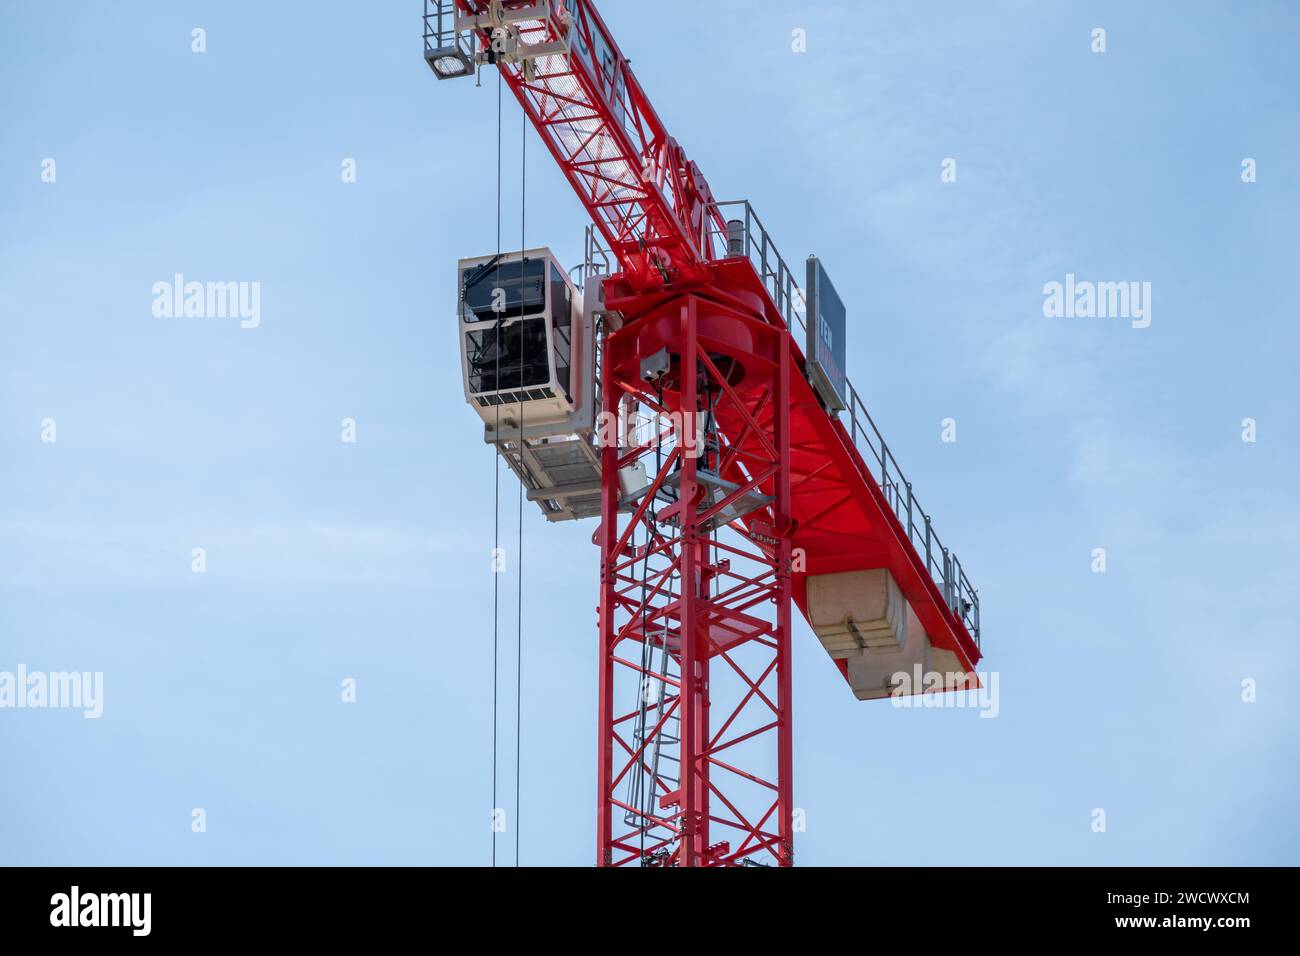 Dettaglio della gru a torre rossa con braccio telescopico, scale e cabina per lavoratori, Paesi Bassi Foto Stock